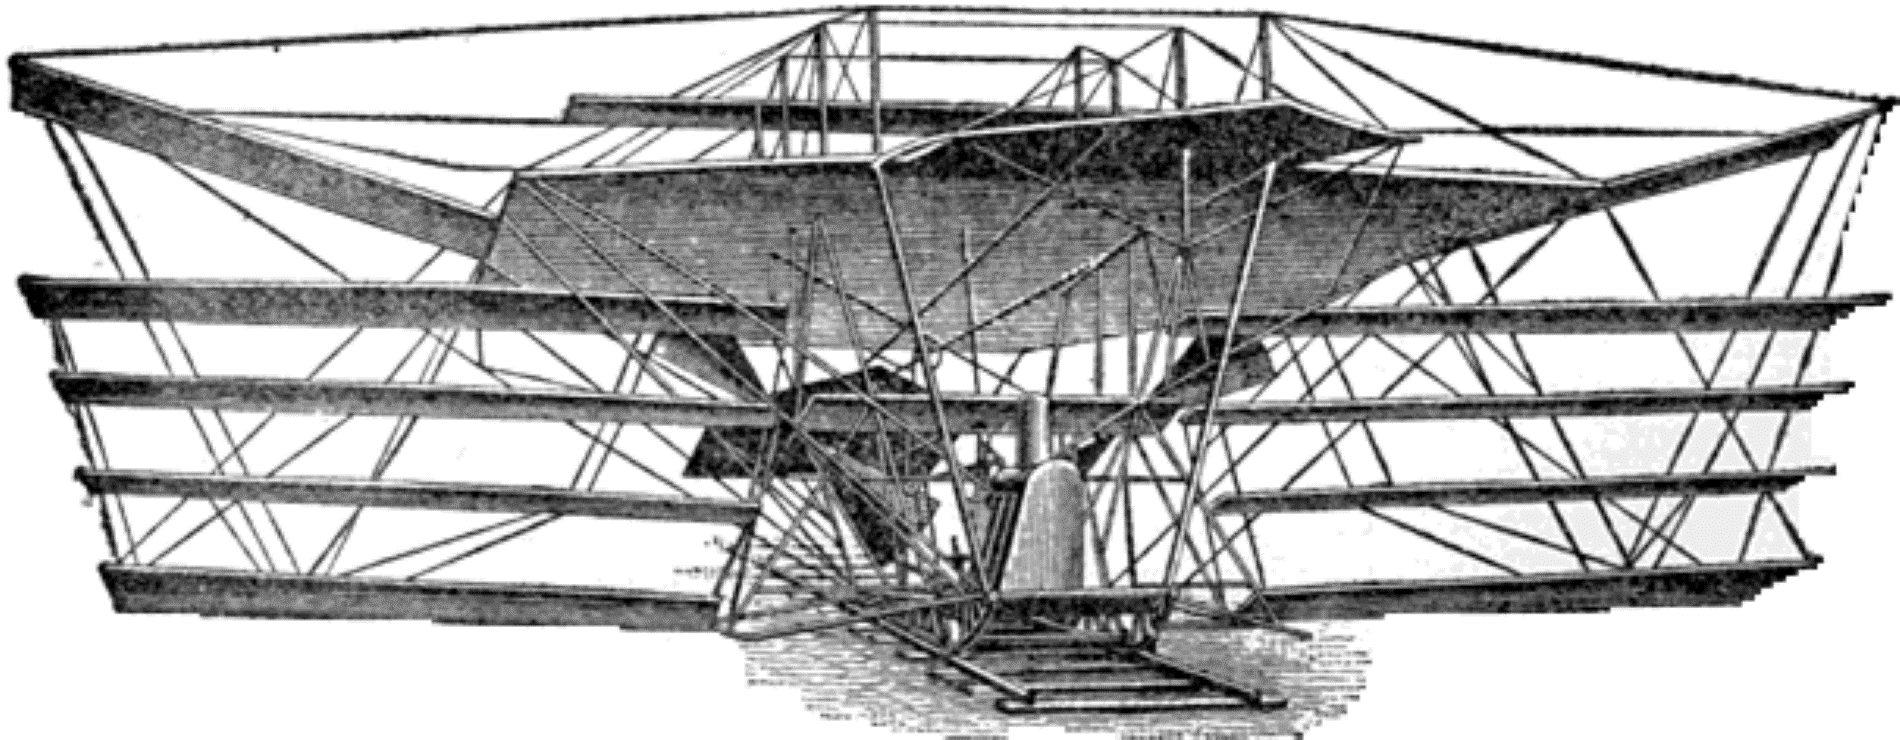 Maxim Flying Machine